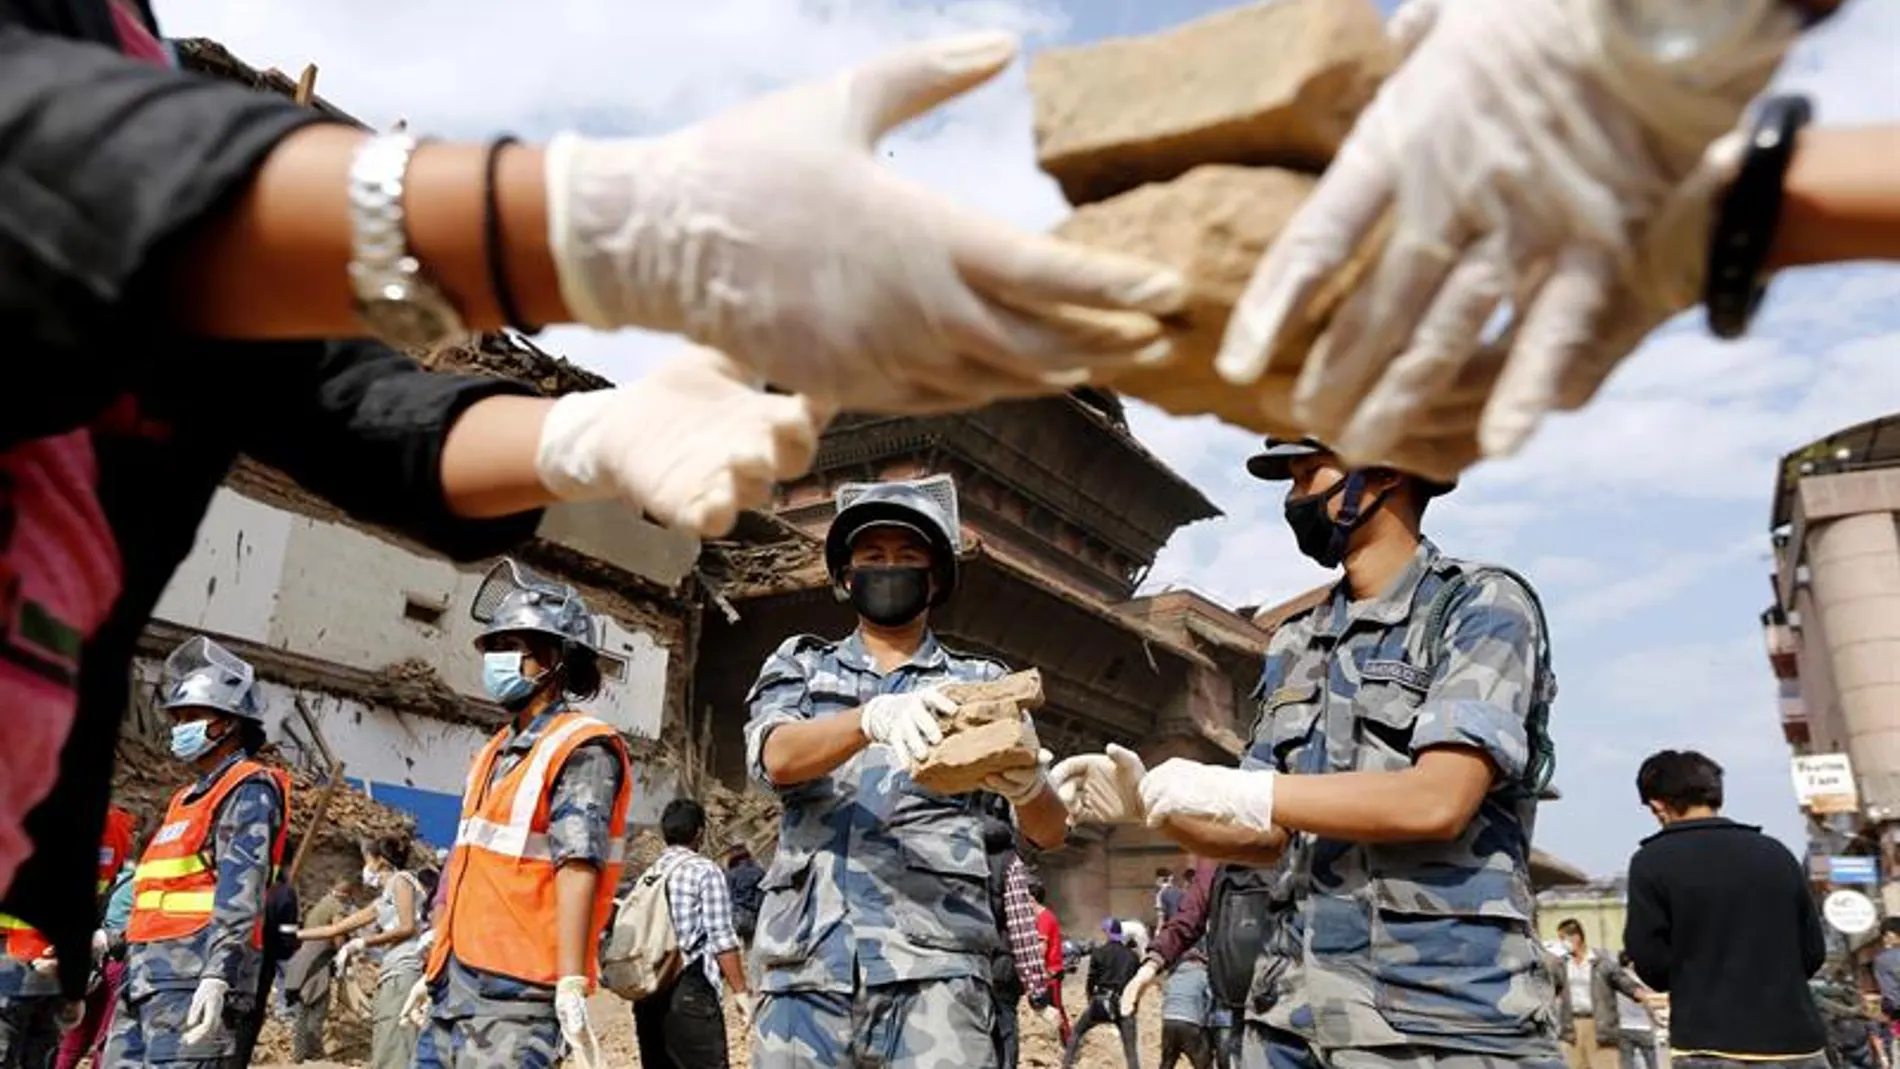 La ayuda humanitaria sigue distribuyéndose con dificultades en Nepal